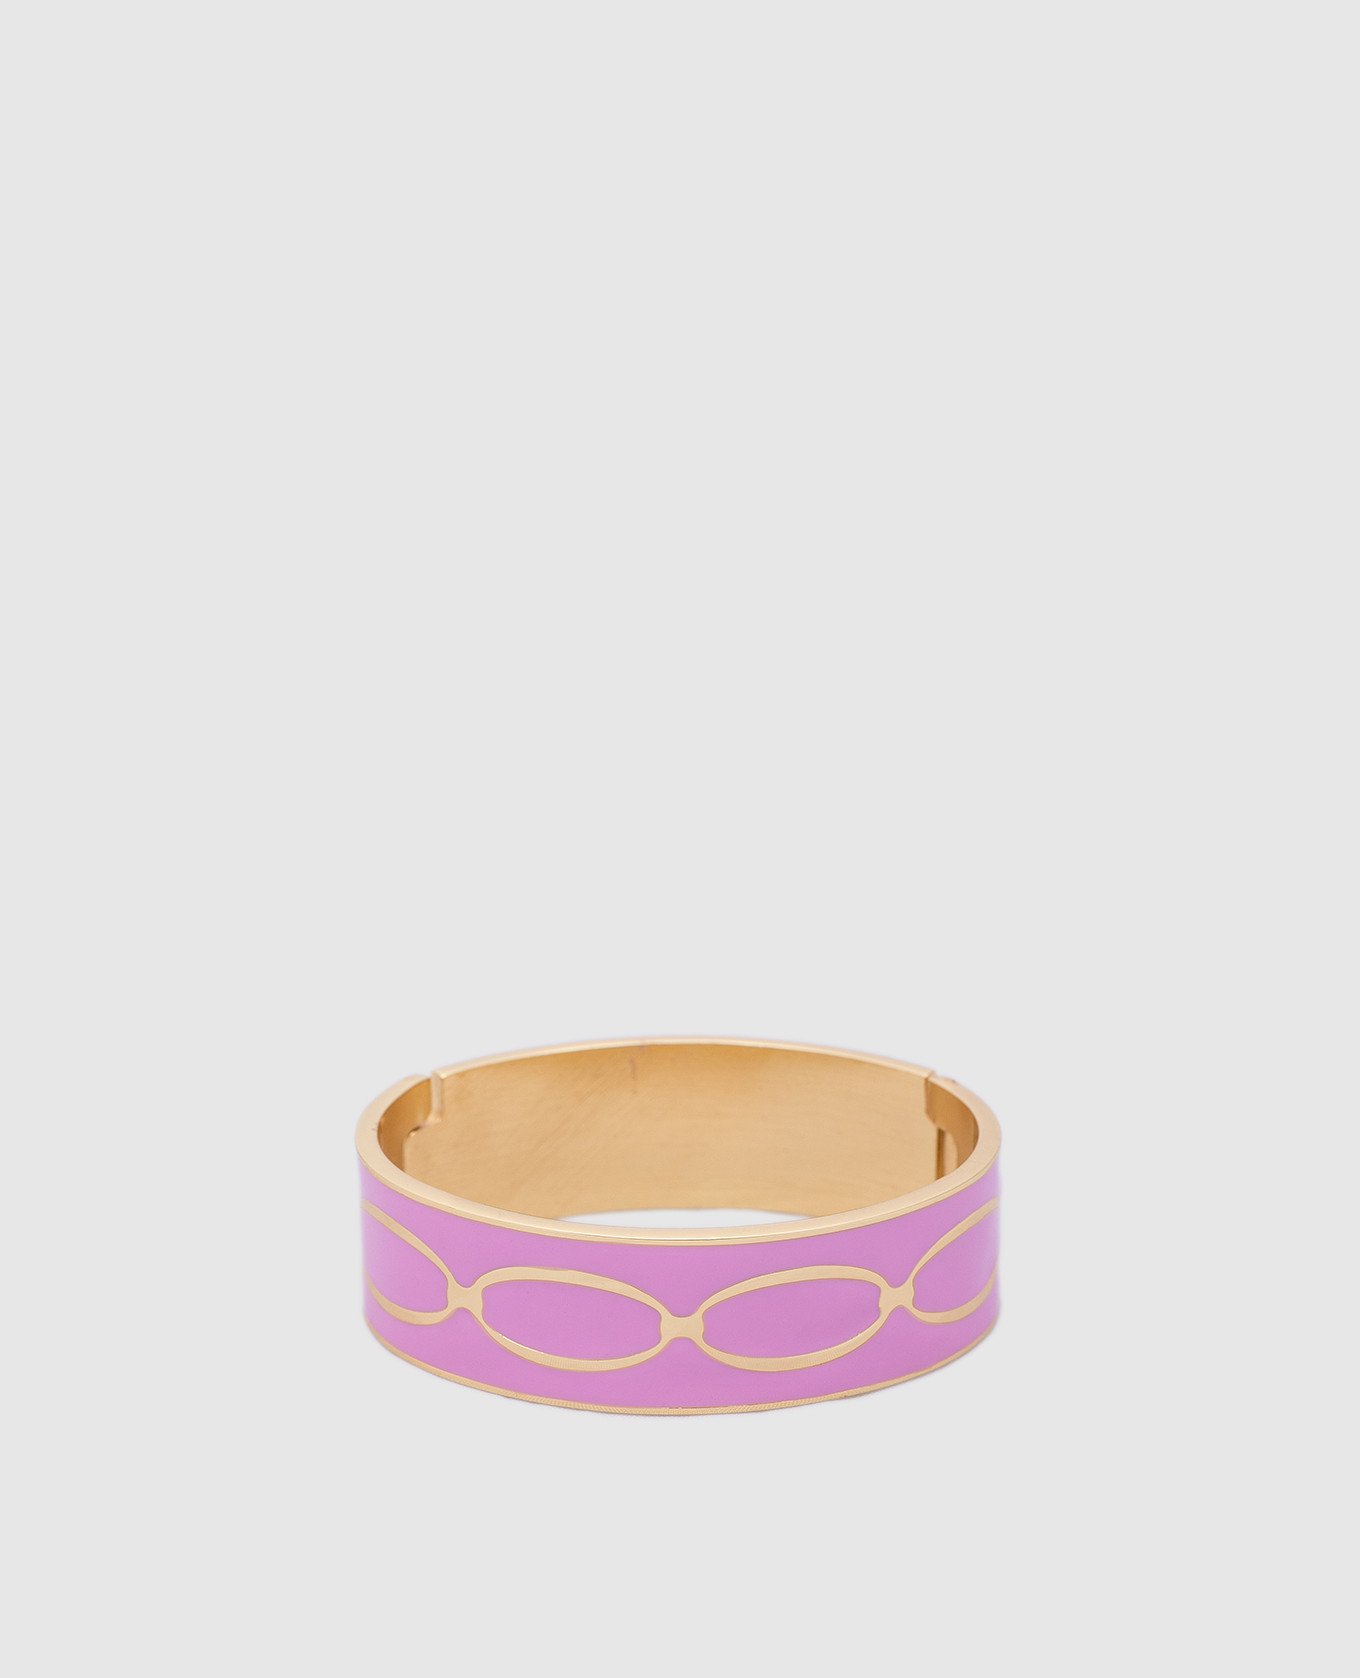 Pink Knot bracelet with 24k gold